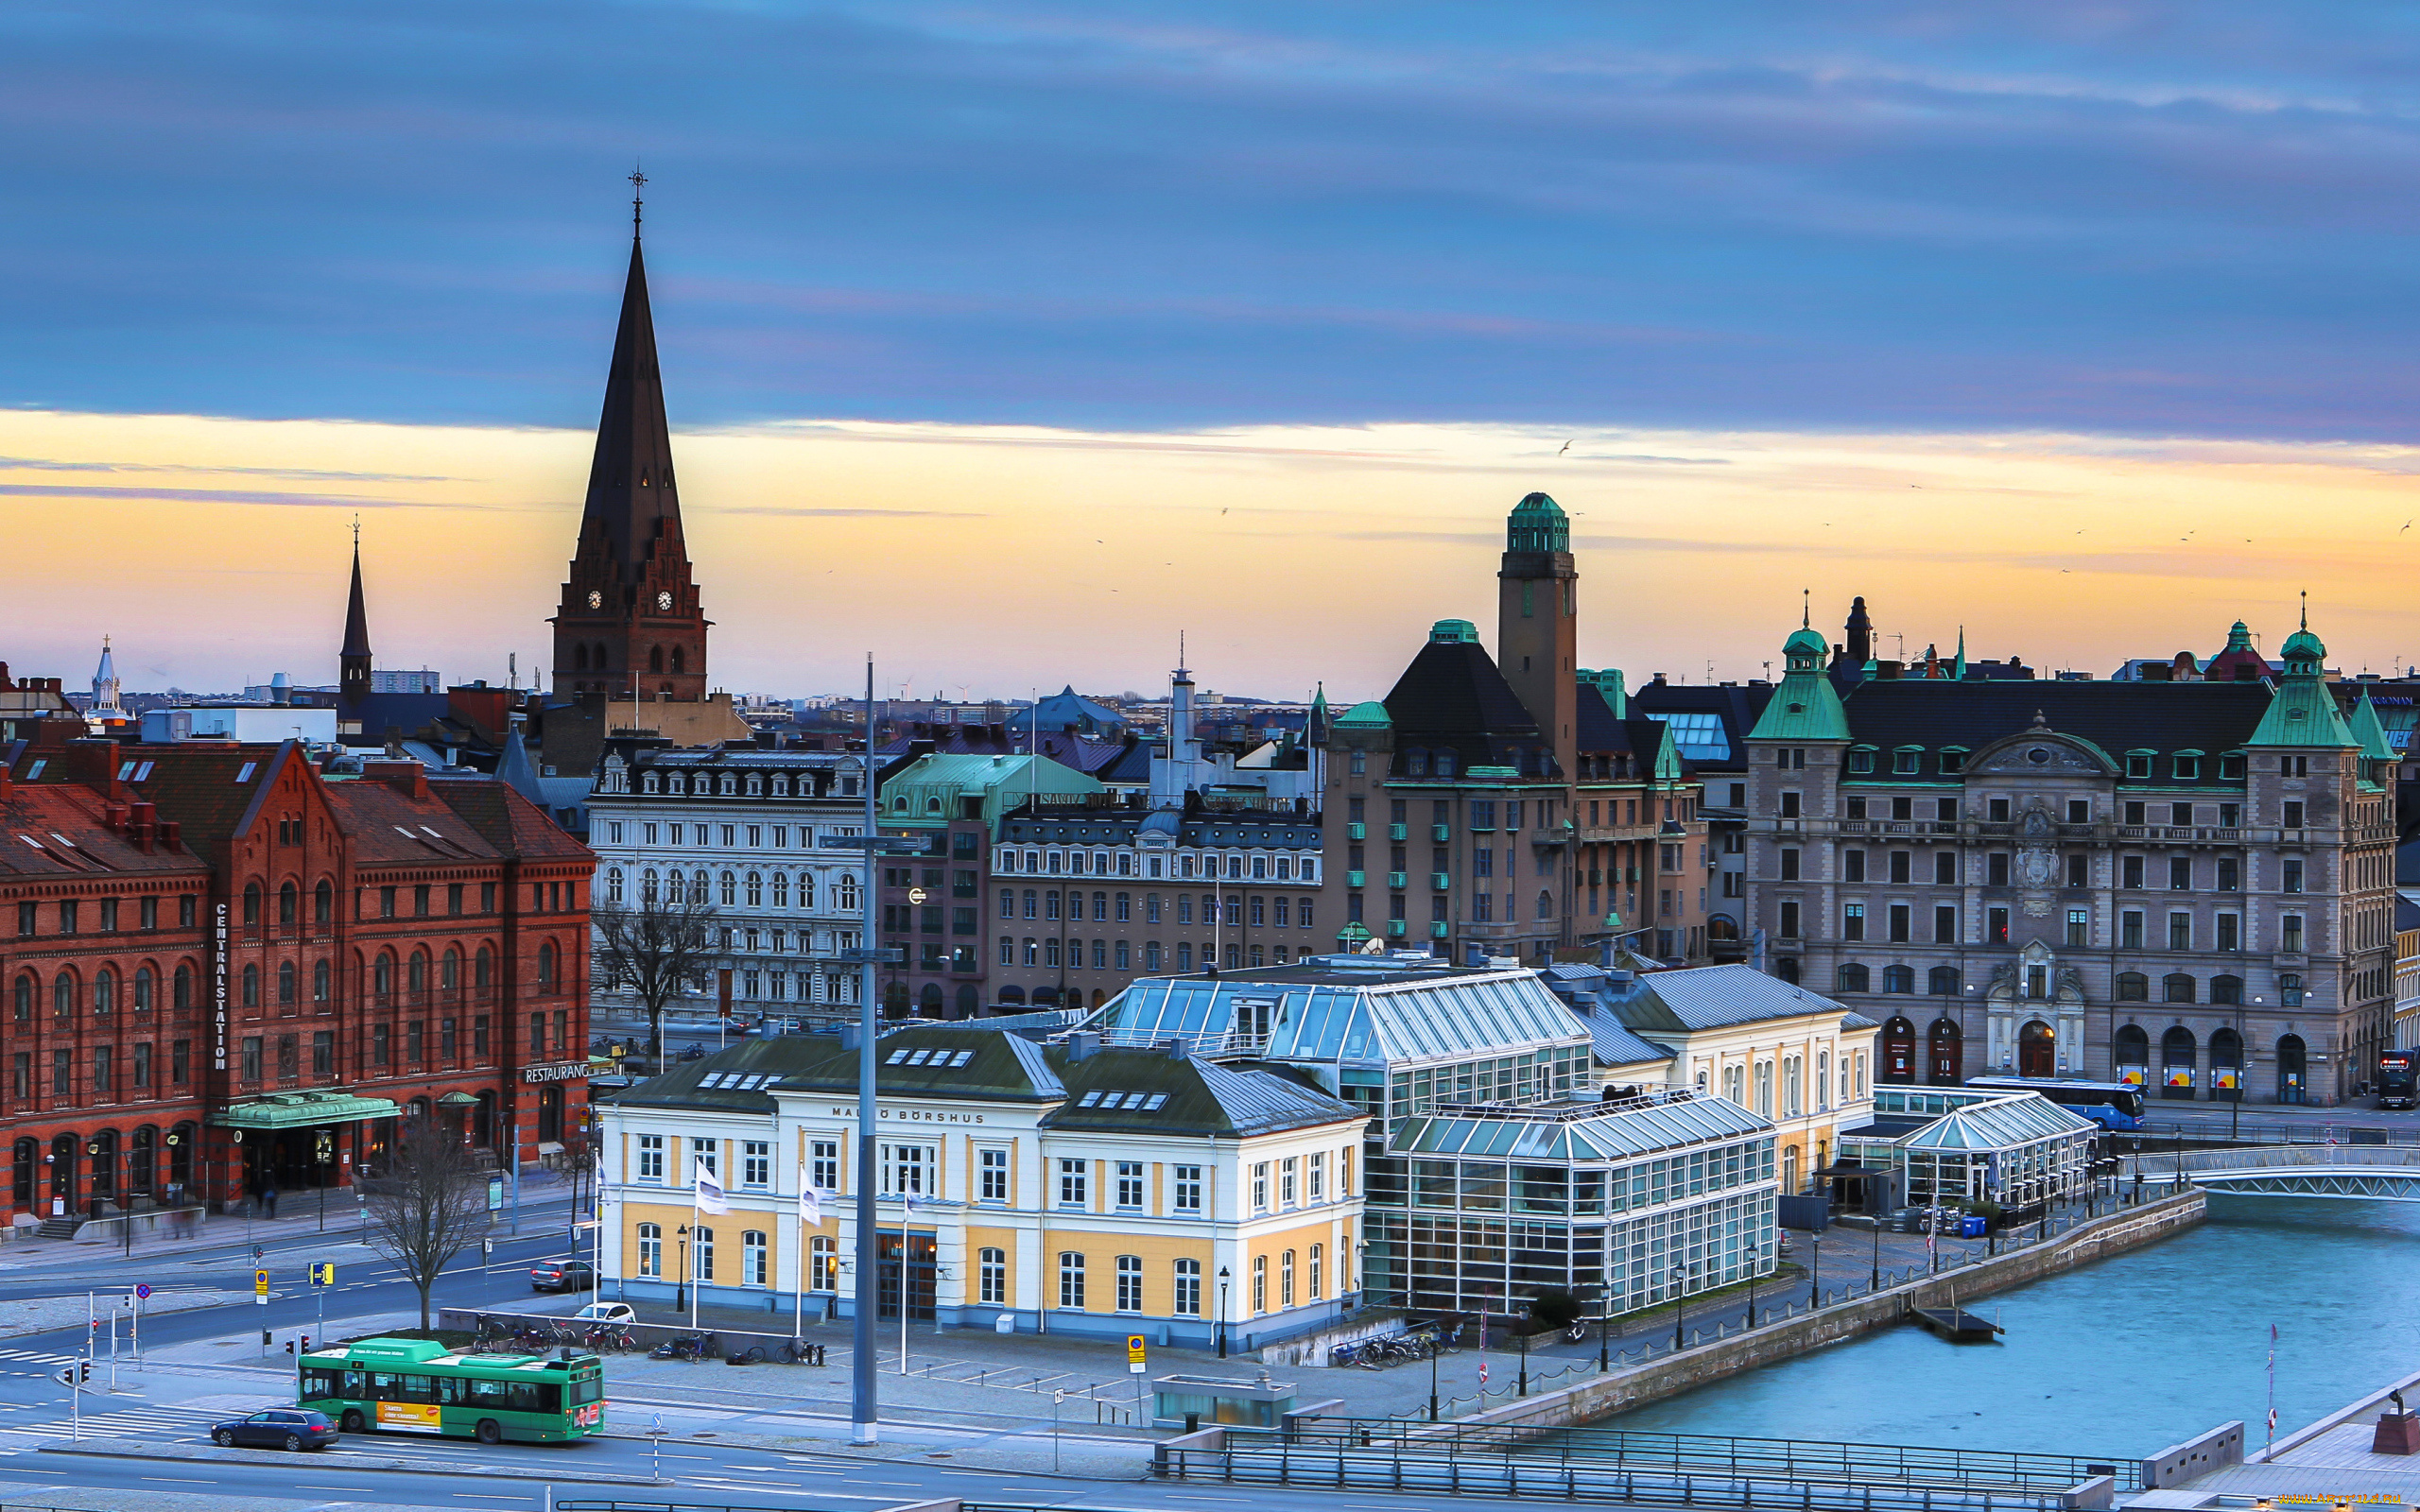 malm, , sweden, города, -, панорамы, транспорт, дома, здания, панорама